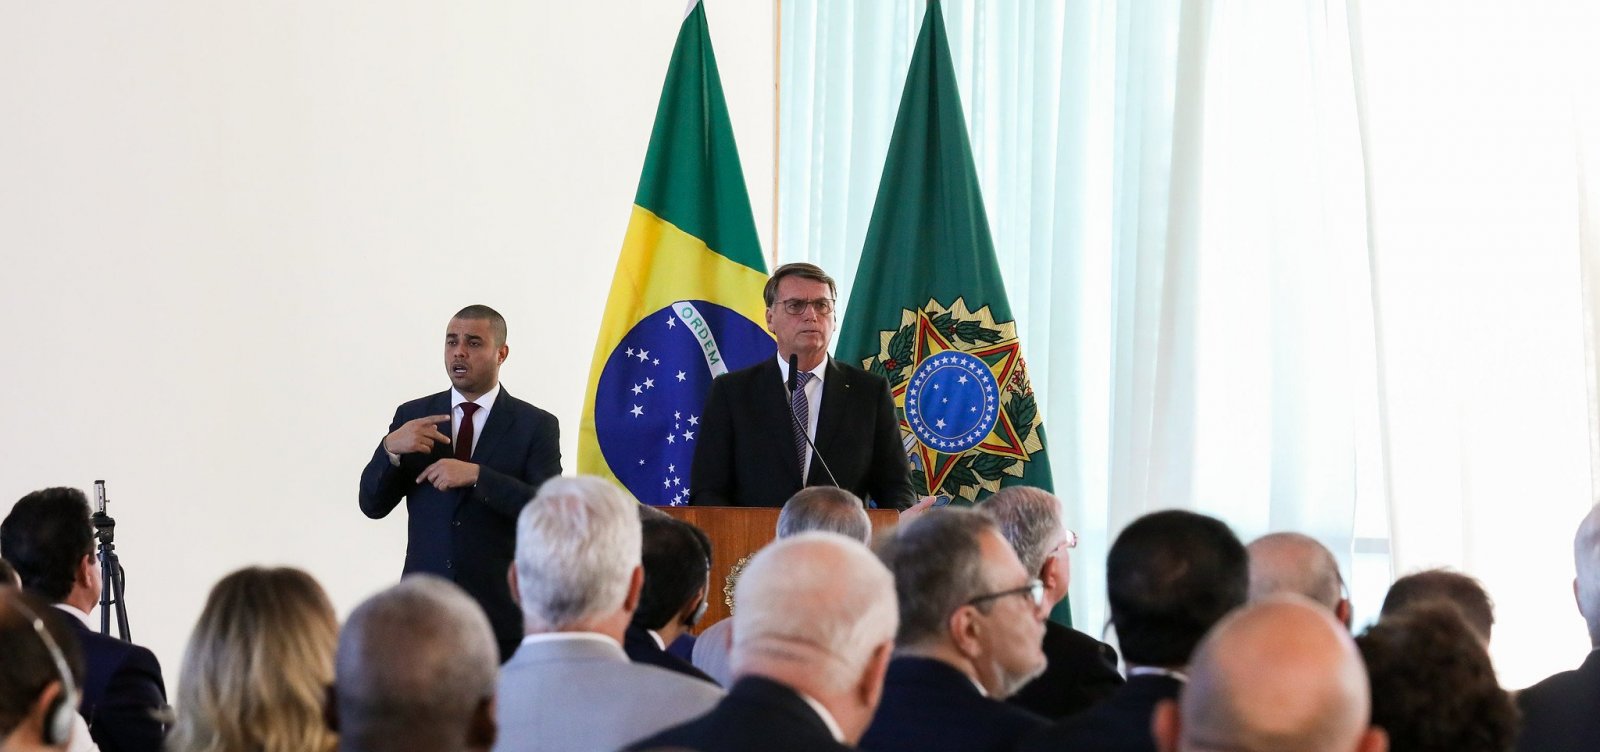 Juízes eleitorais defendem urnas eletrônicas depois de Bolsonaro atacar sistema